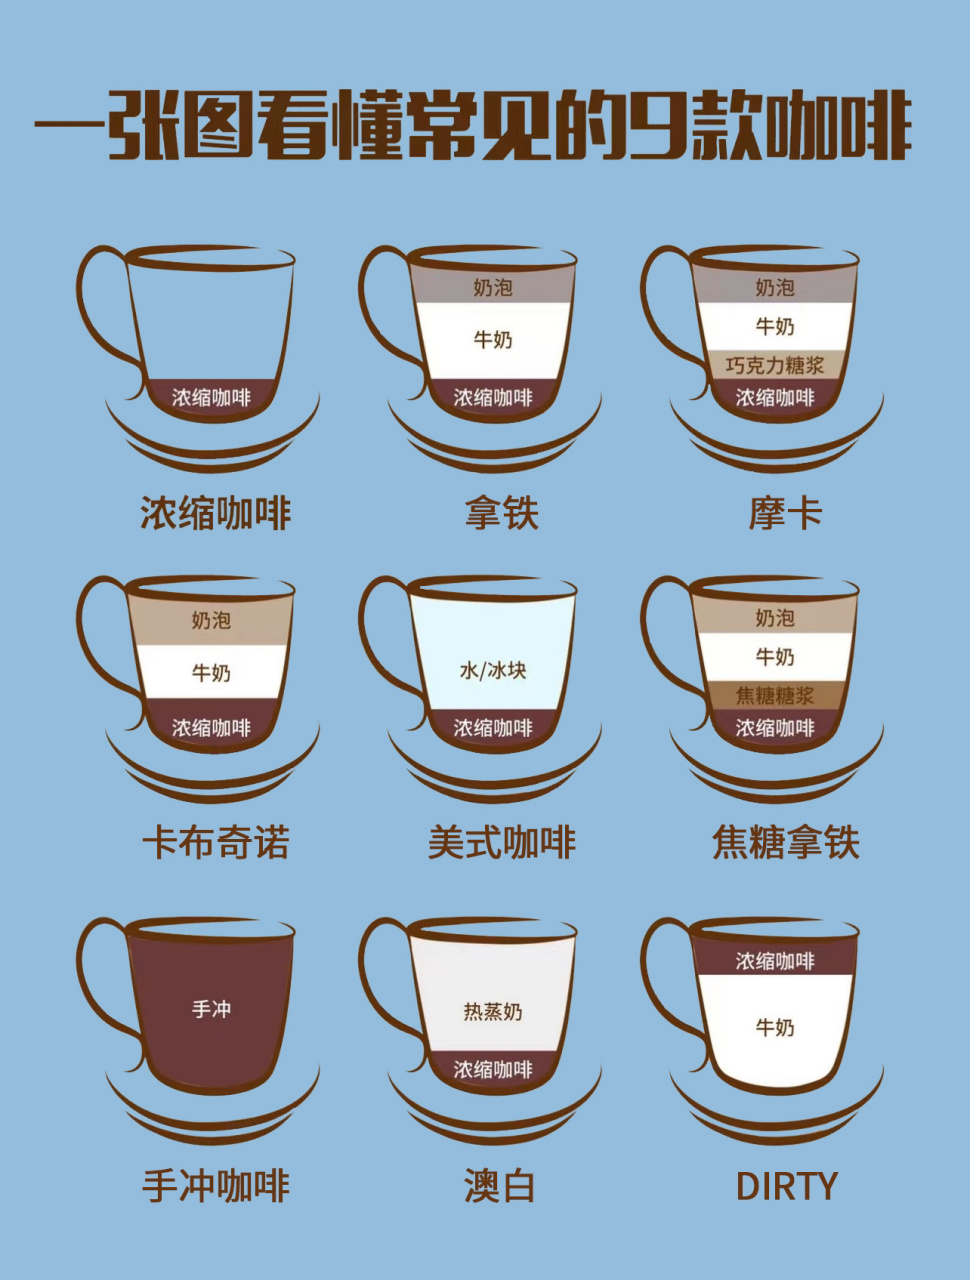 咖啡口味的区别图解图片